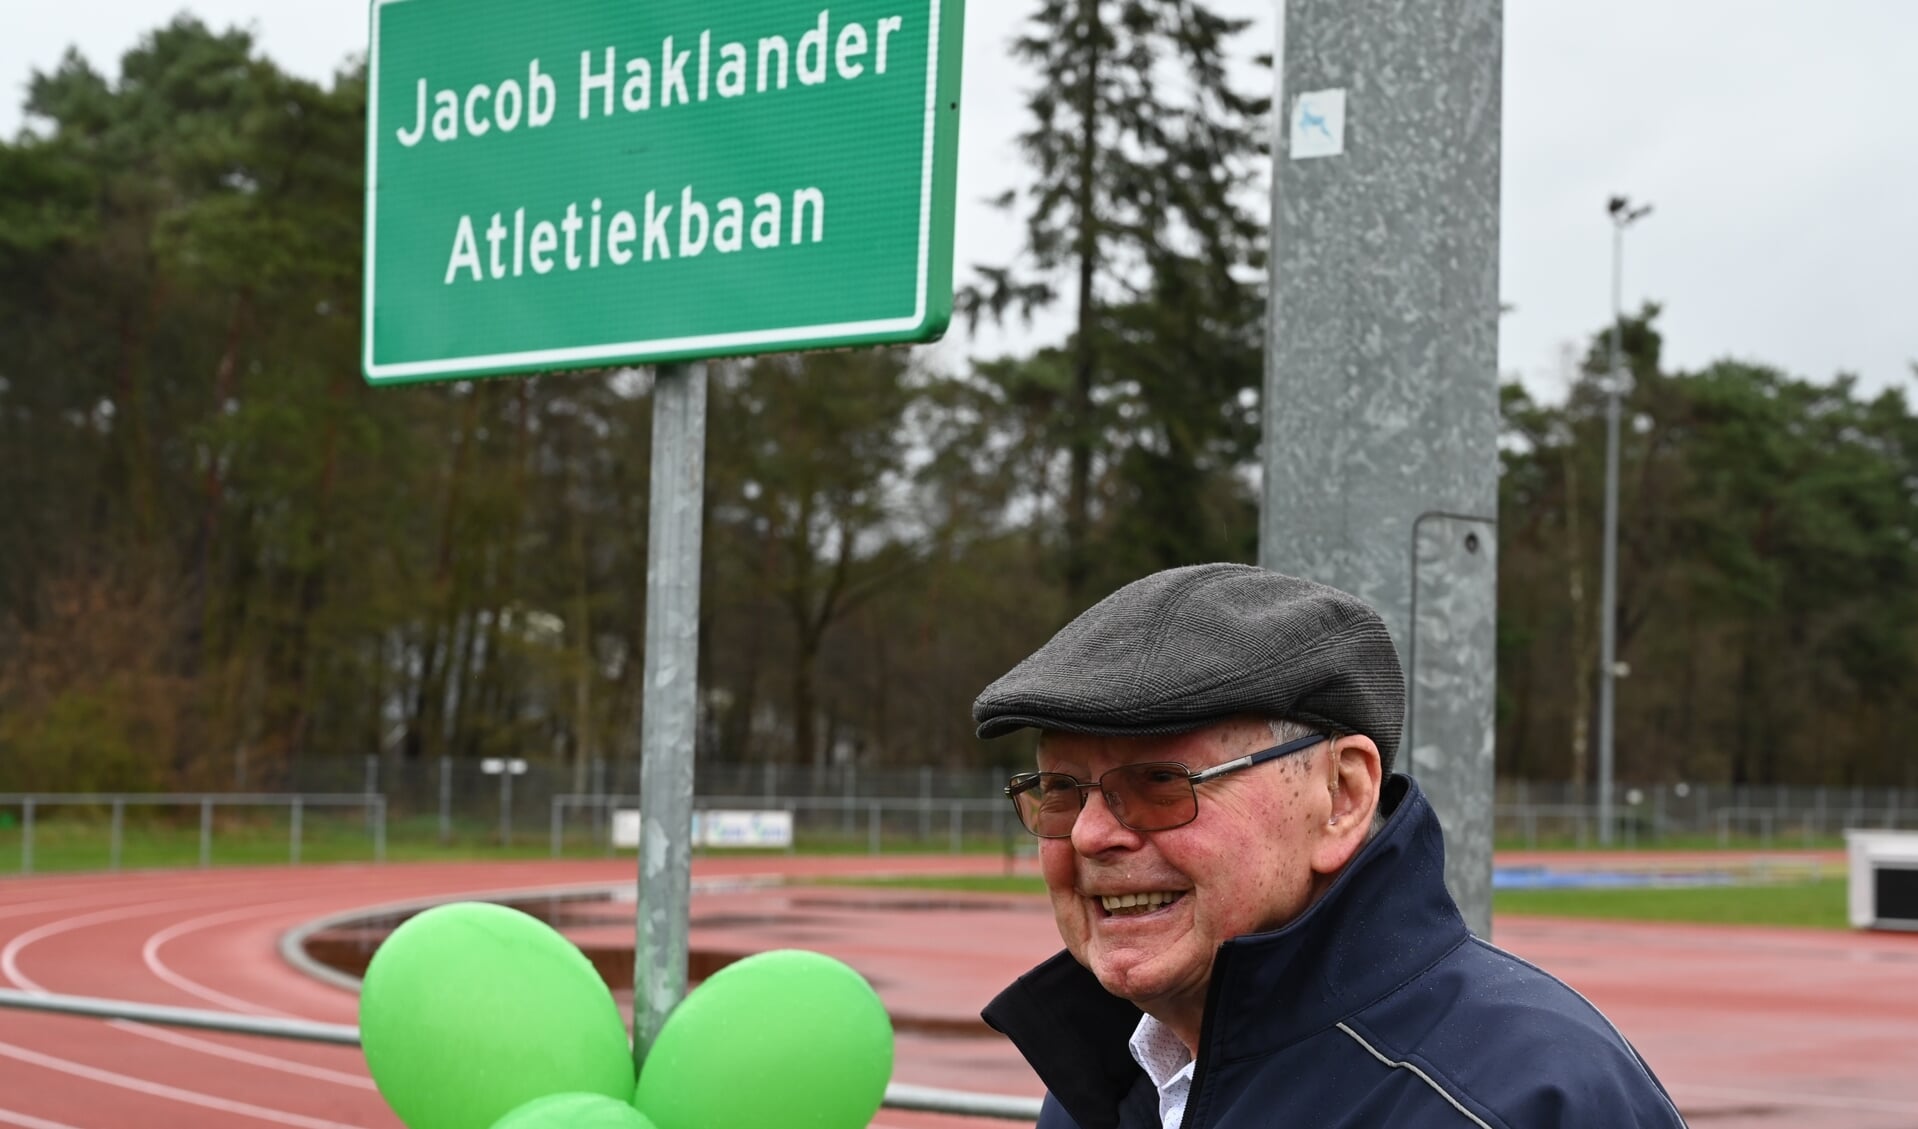 Jacob Haklander kreeg de atletiekbaan naar zich vernoemd en was zichtbaar trots.